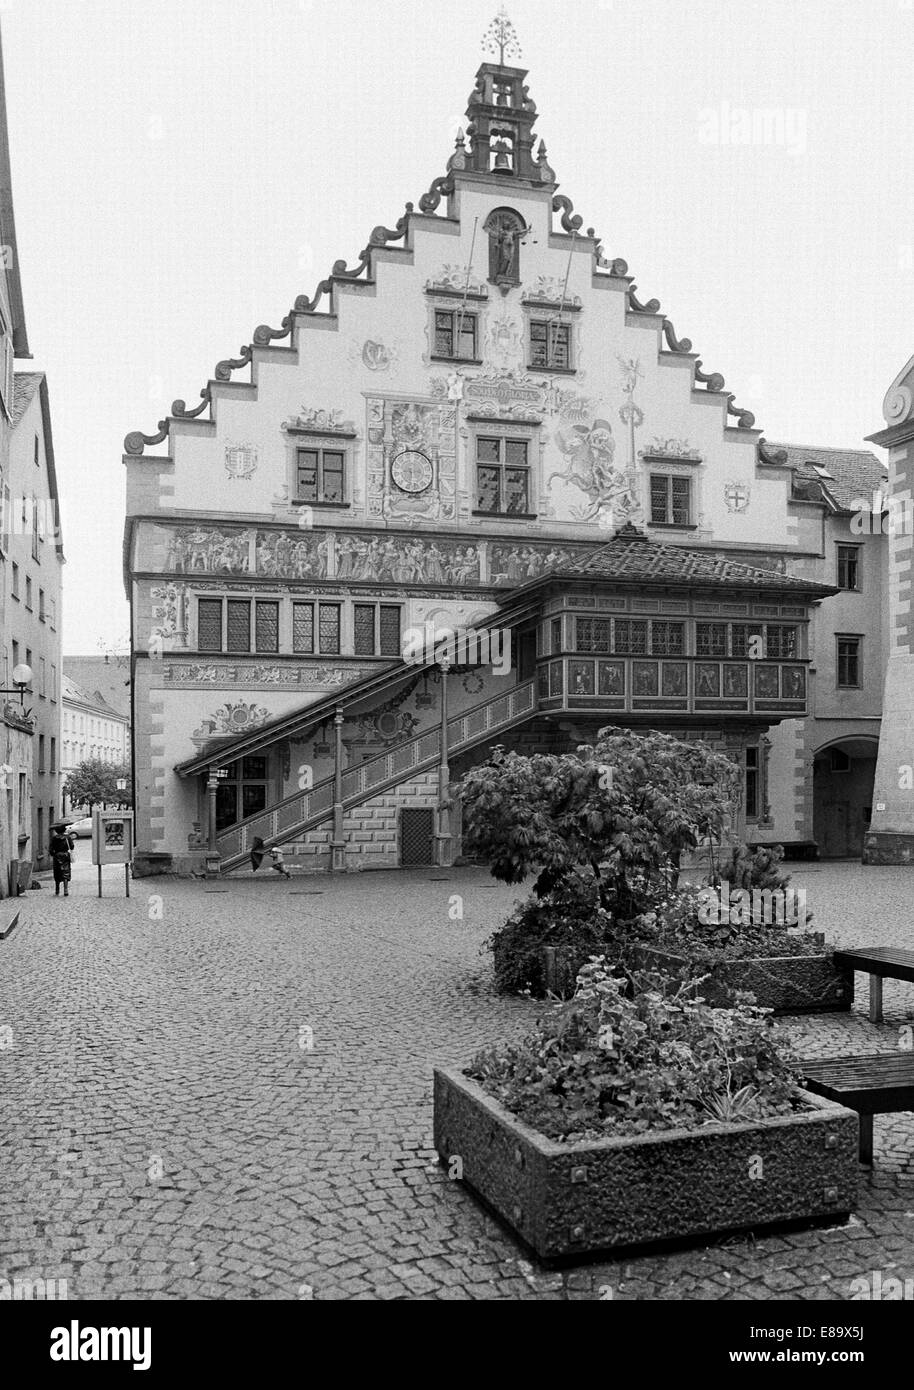 Achtziger Jahre, Renaissancerathaus in Lindau (Bodensee), Schwaben, Bayern, Wandmalerei, Volutengiebel und ueberdachte Aussentreppe Stock Photo